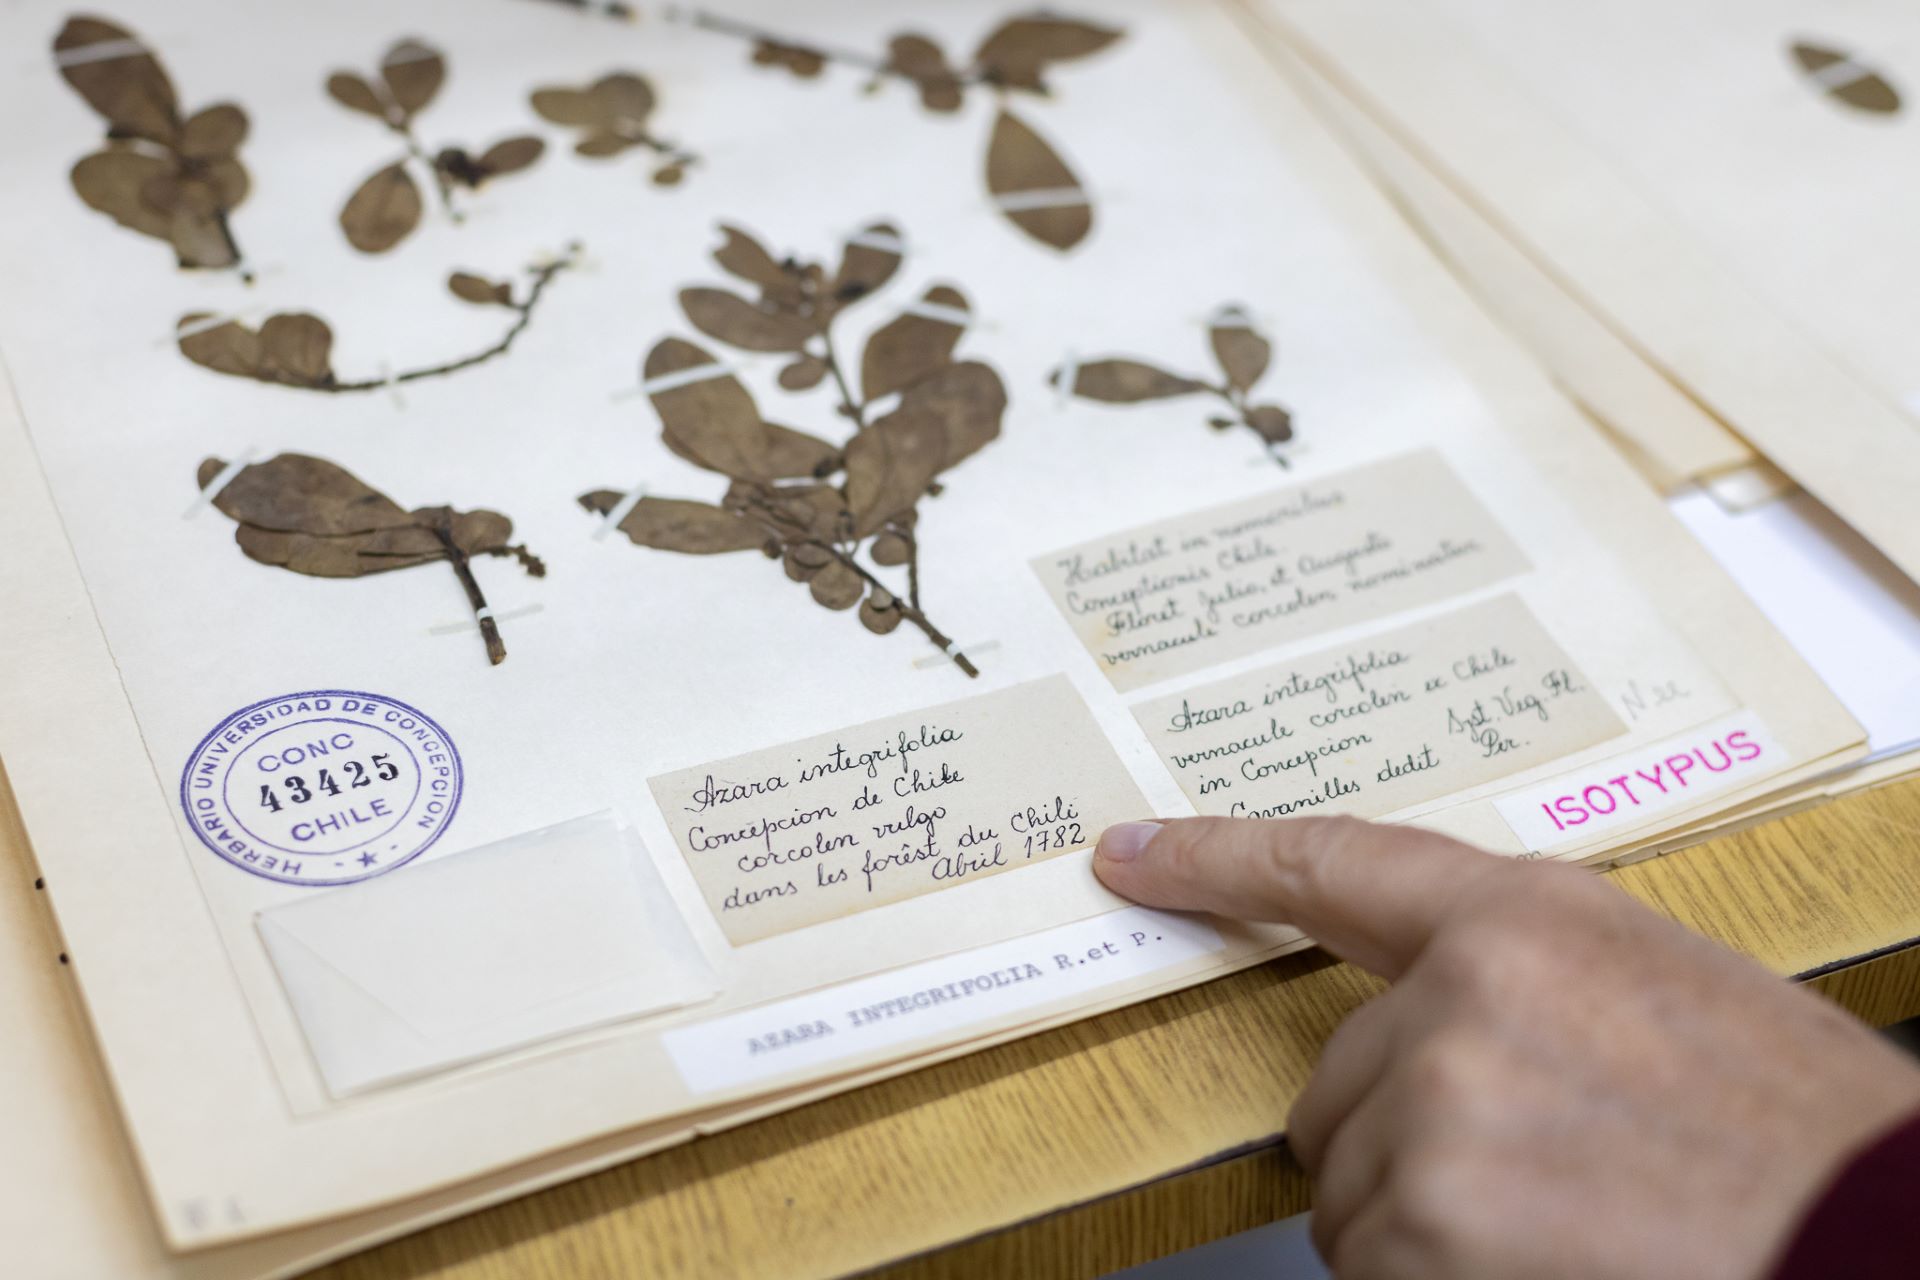 Herbario de U. de Concepción: 100 años de conservación botánica